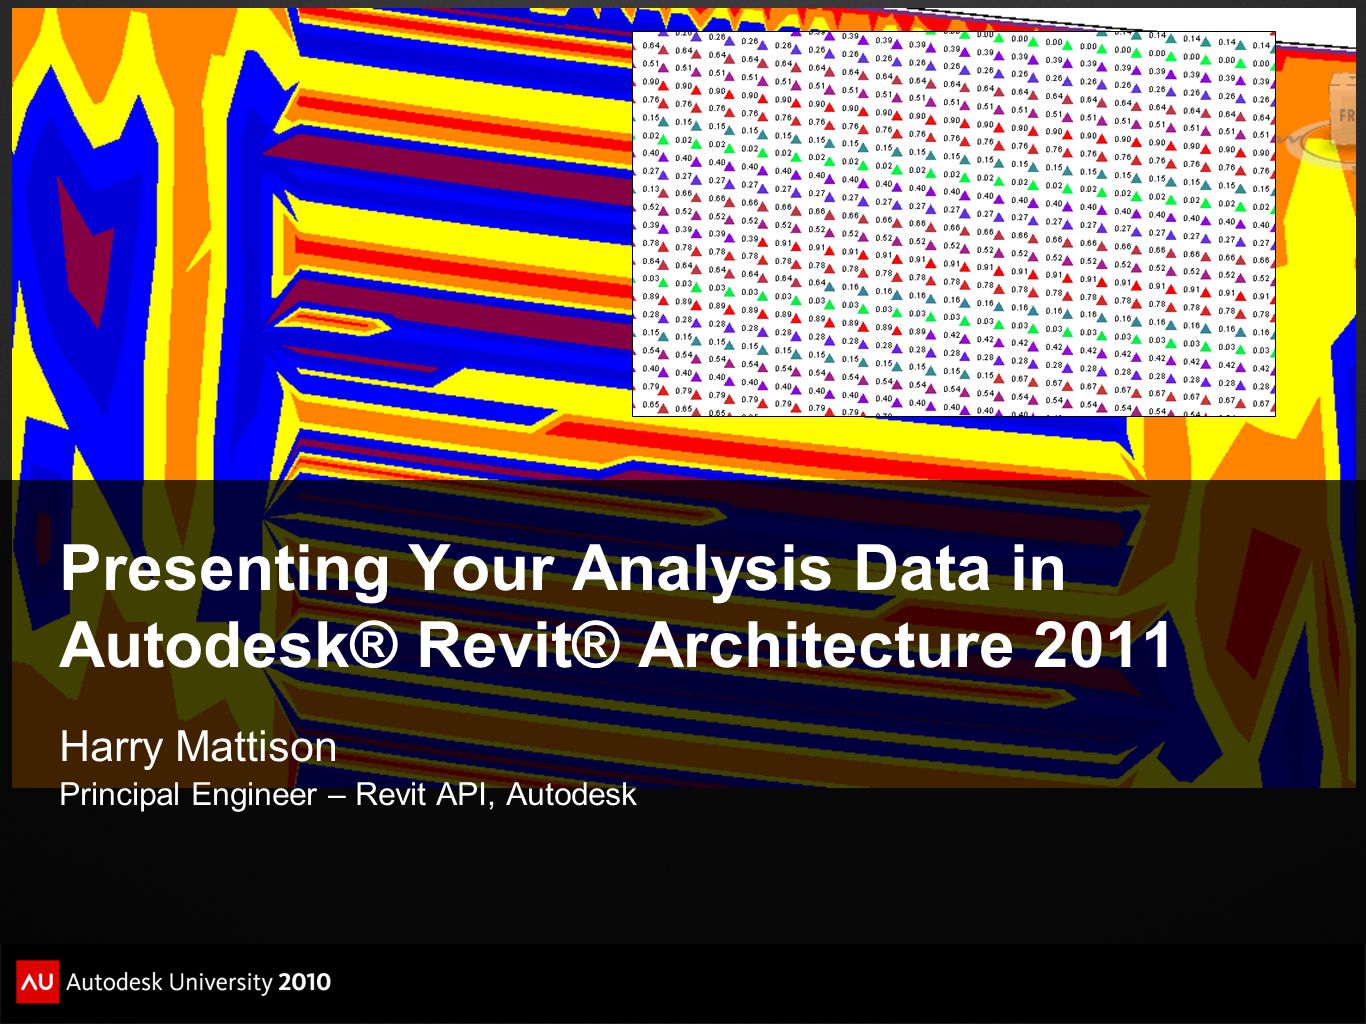 autodesk revit architecture 2011 download